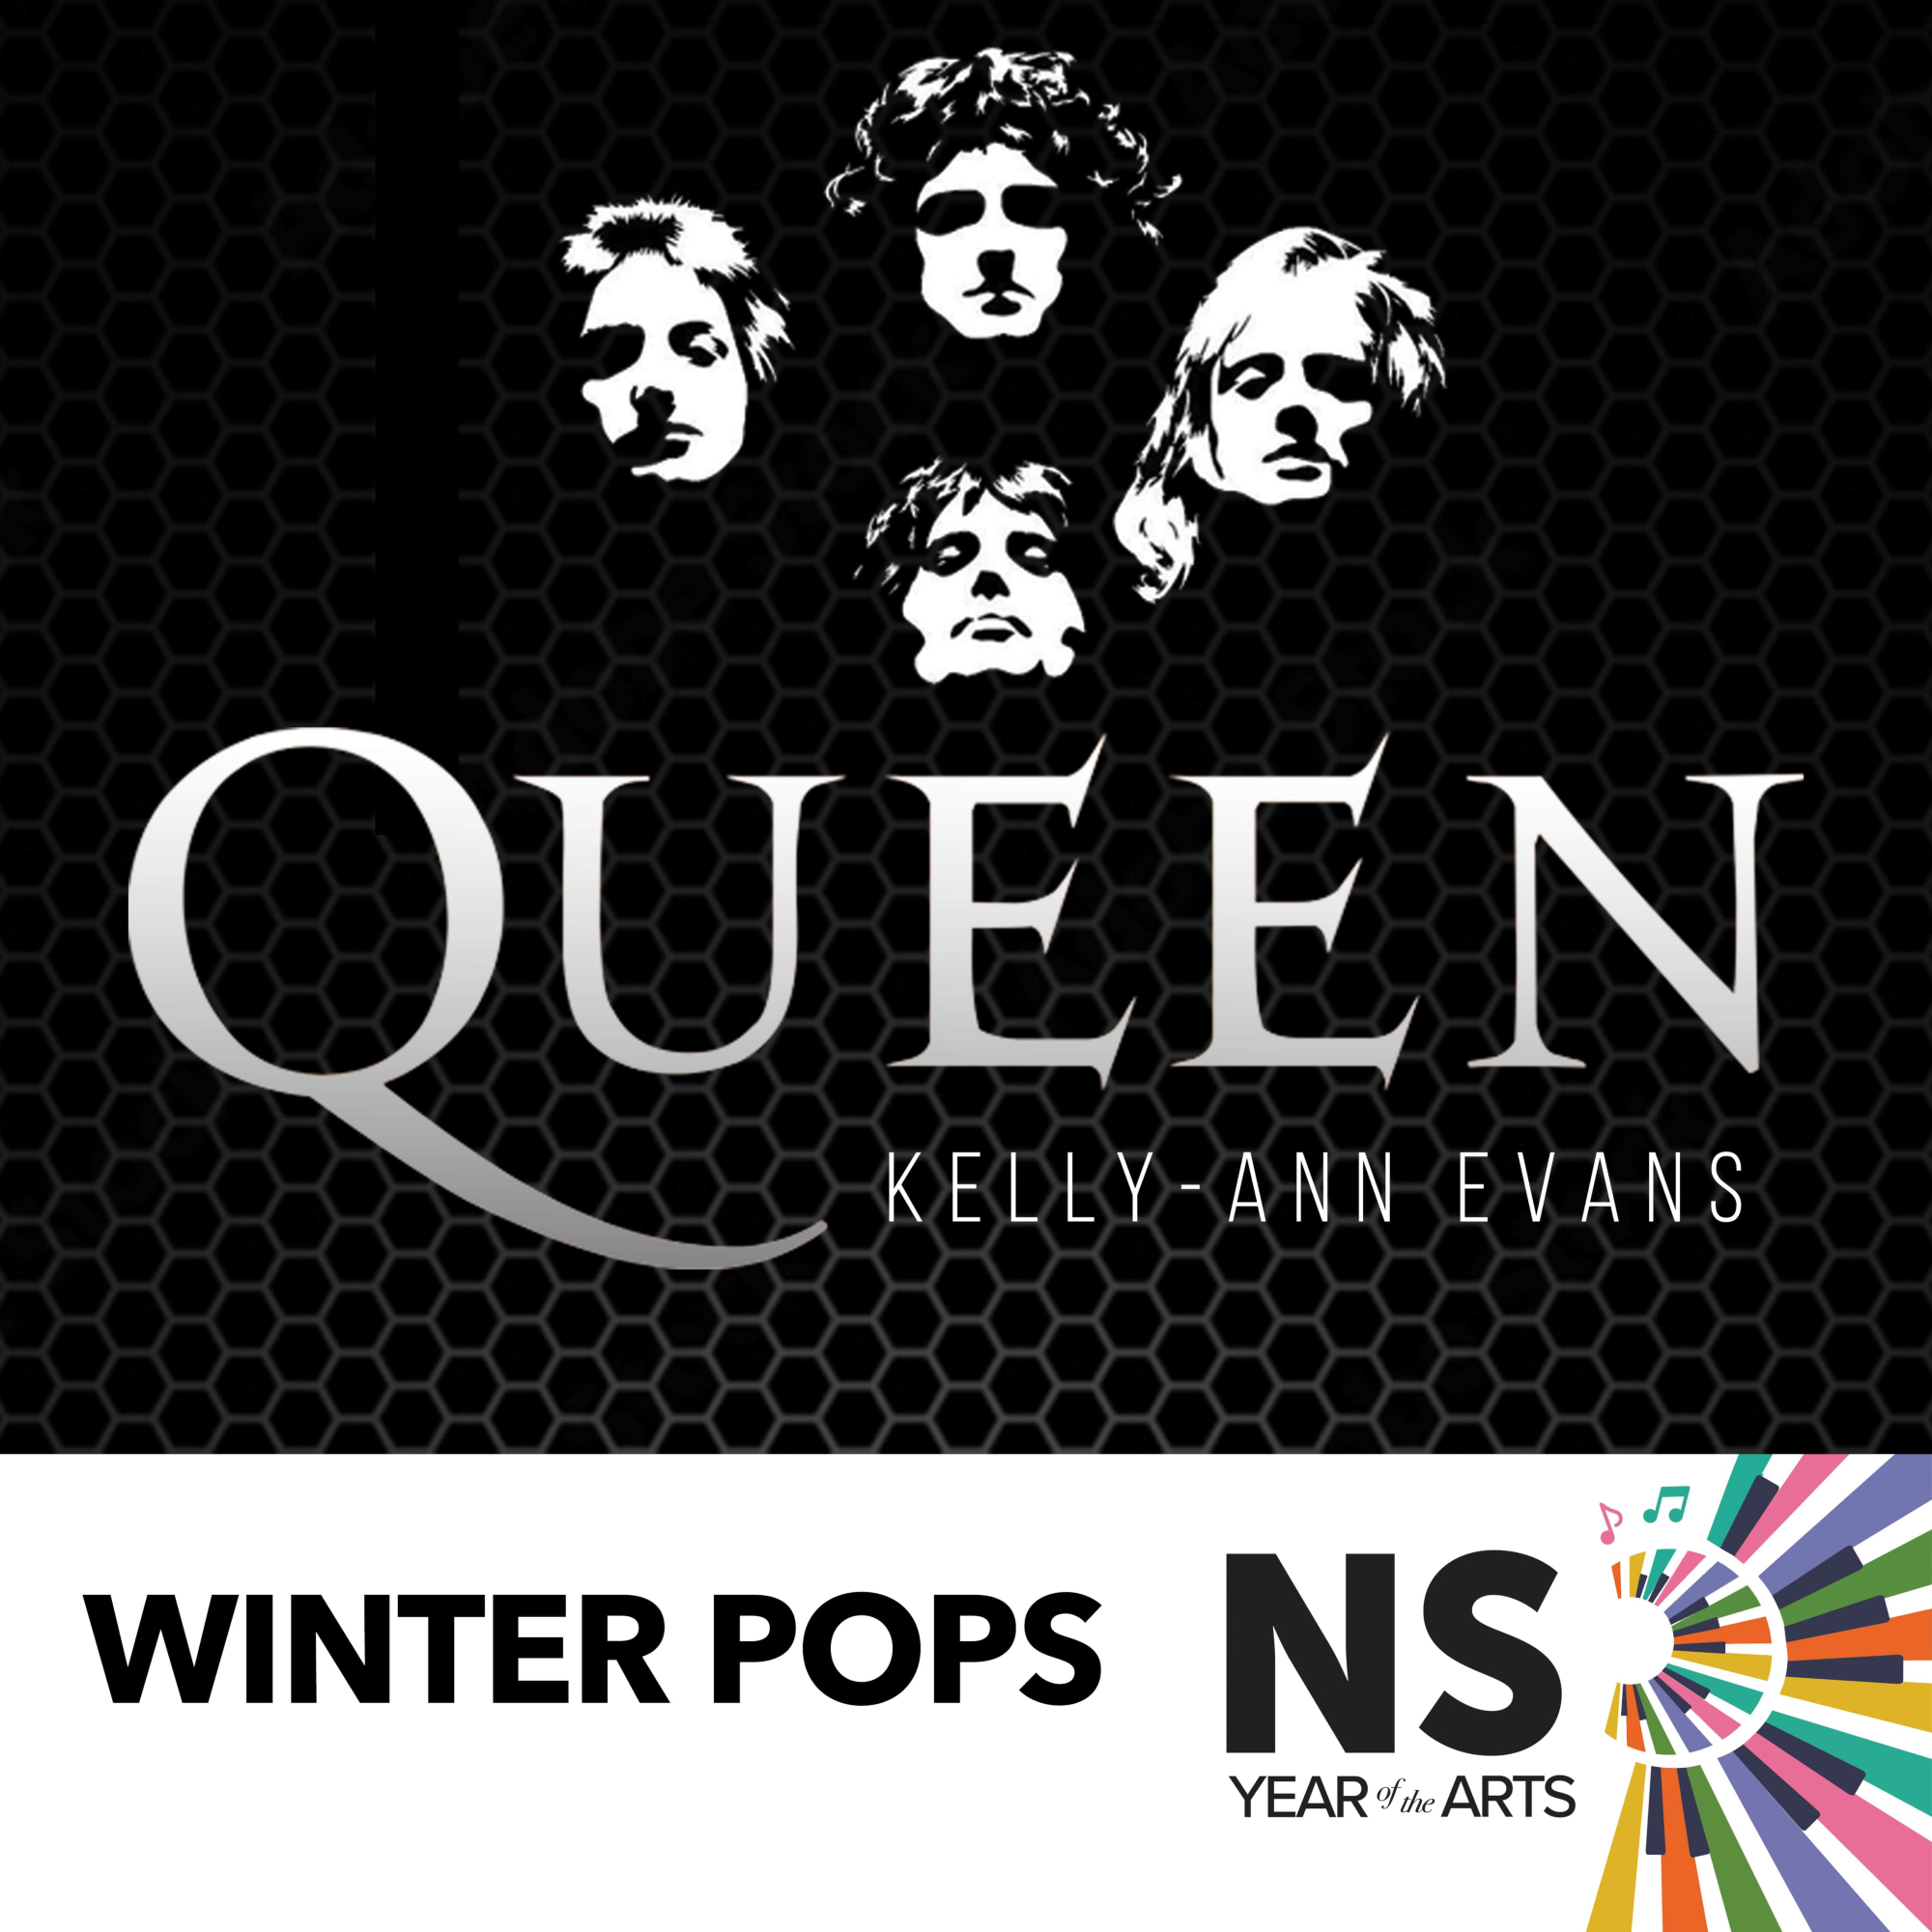 Winter Pops – The Music of Queen